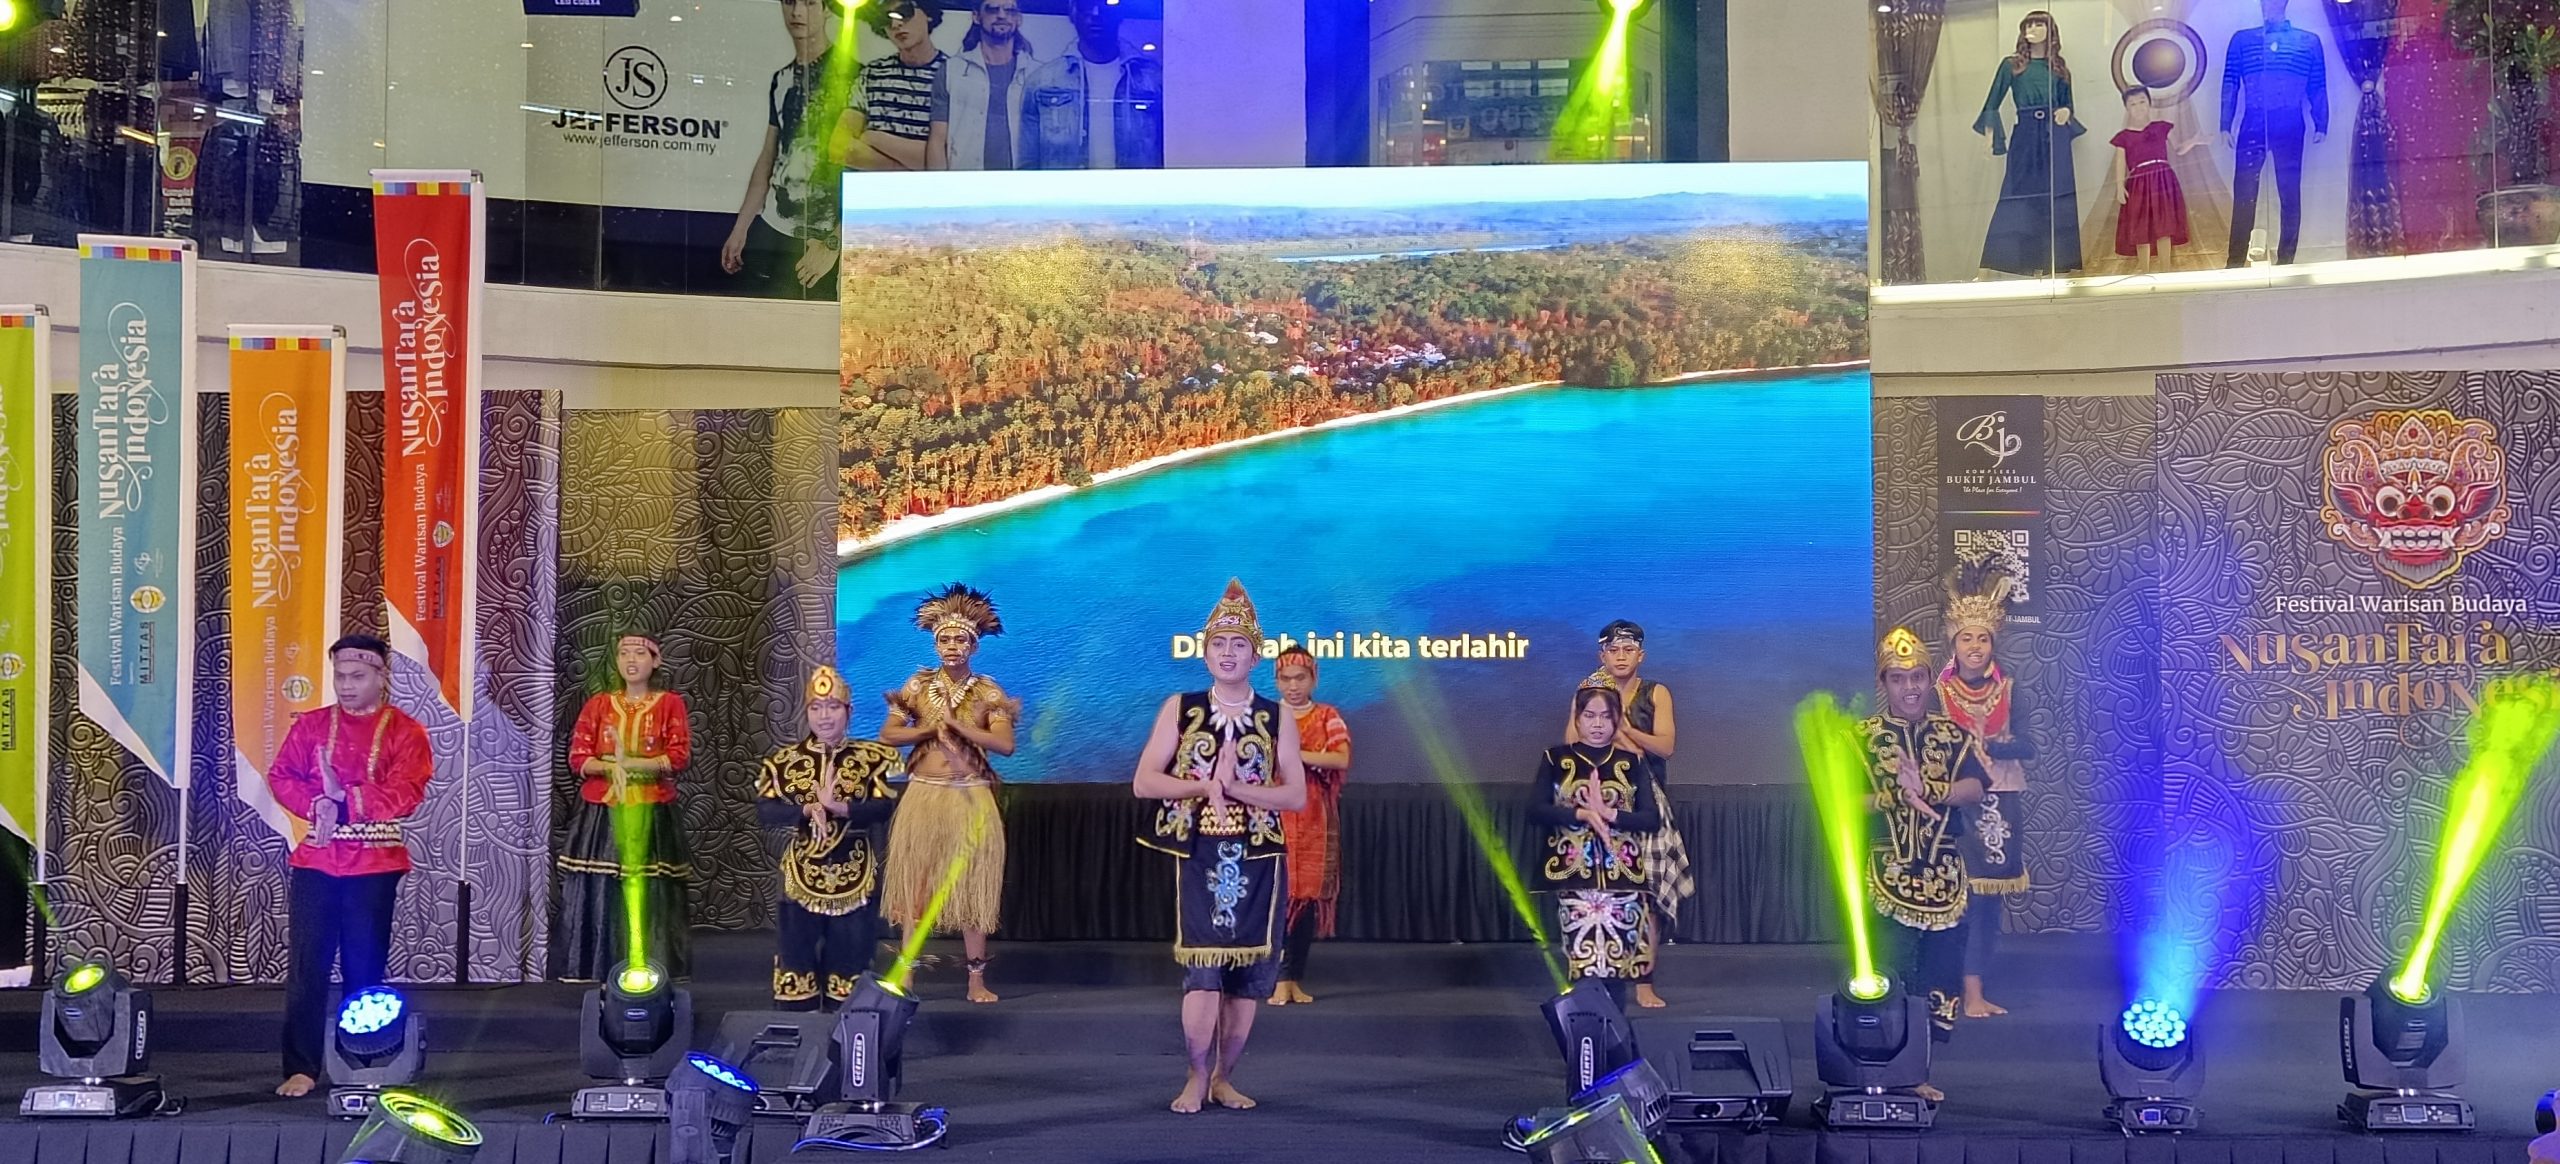 精彩的印尼巴厘島迎賓舞為活動拉開序幕。